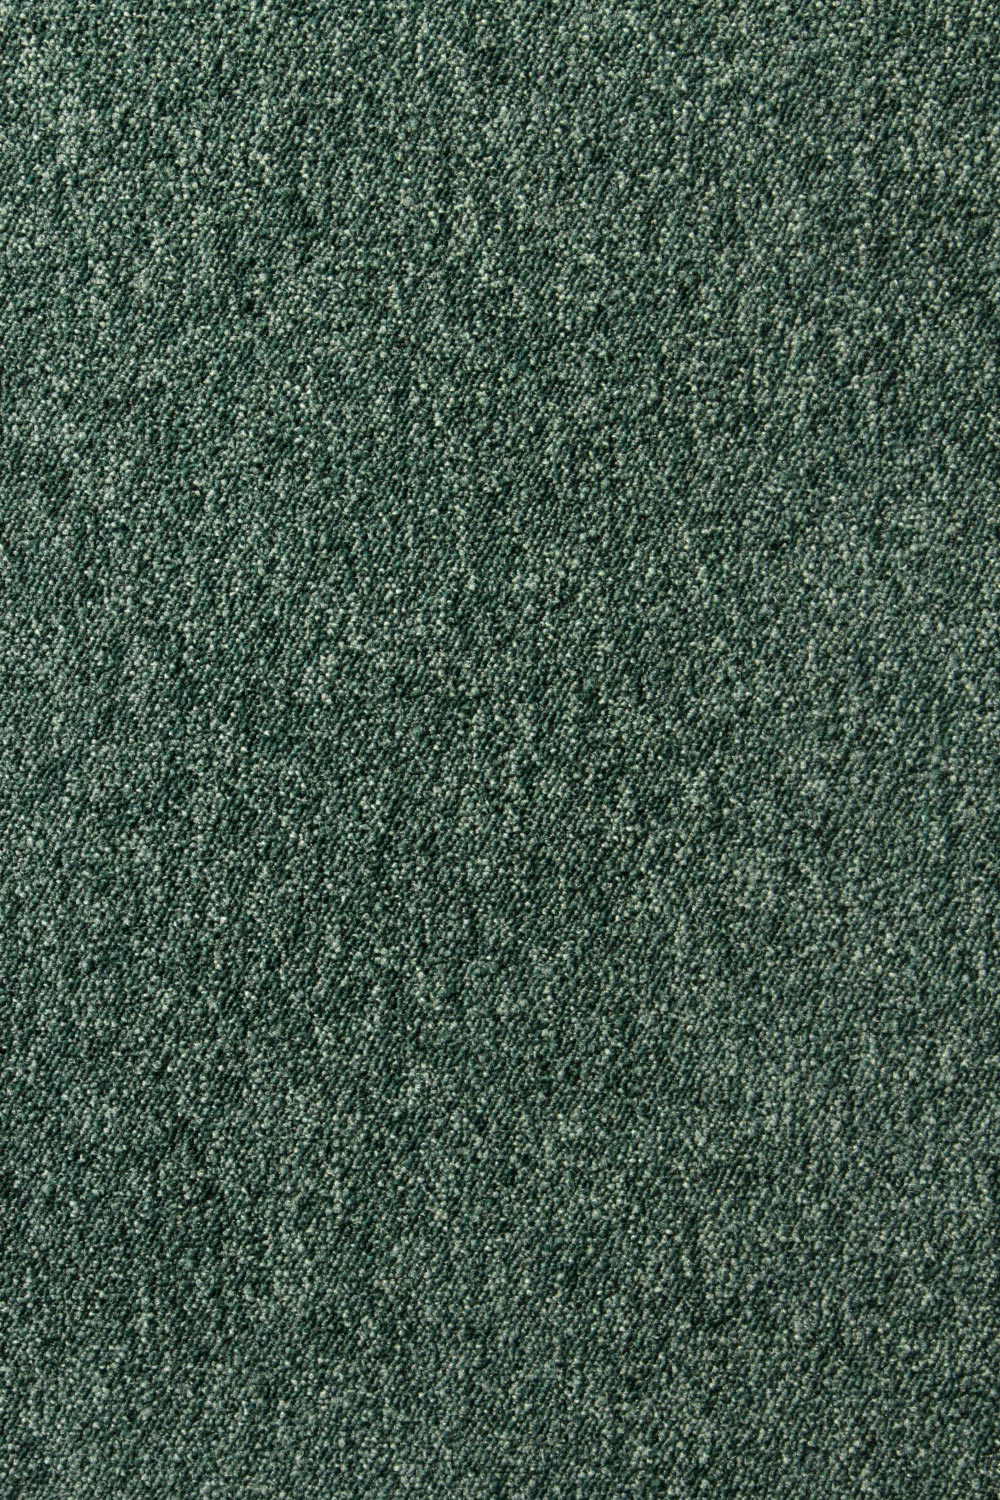 Metrážny koberec Lyon Solid 41 500 cm